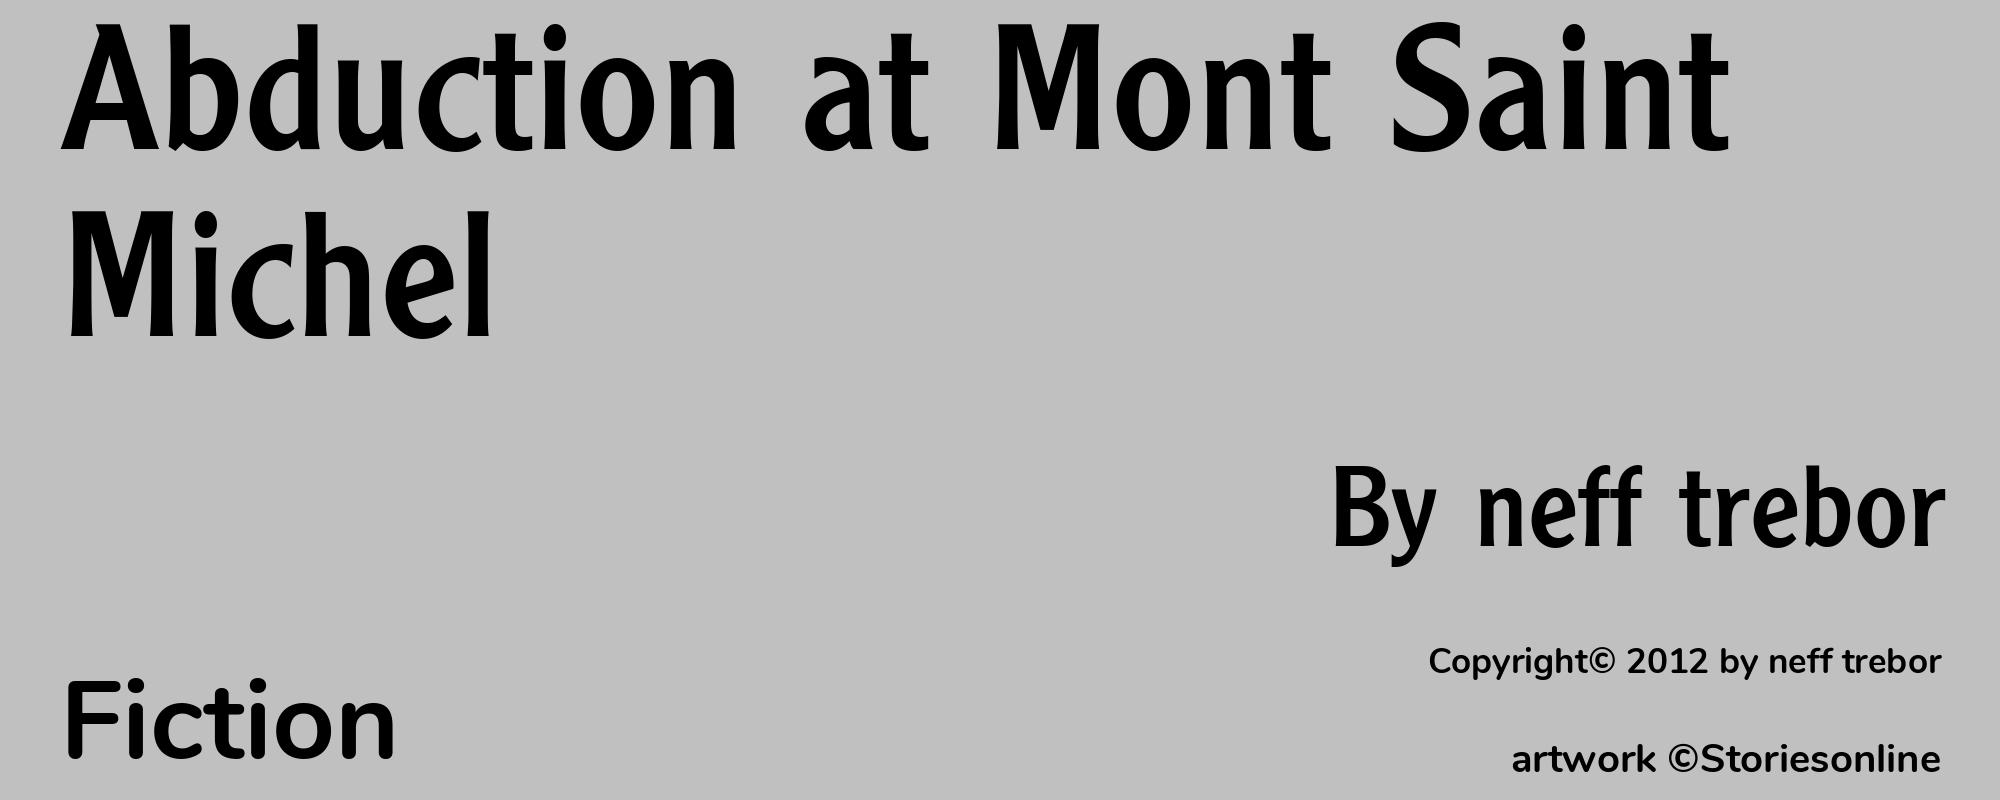 Abduction at Mont Saint Michel - Cover